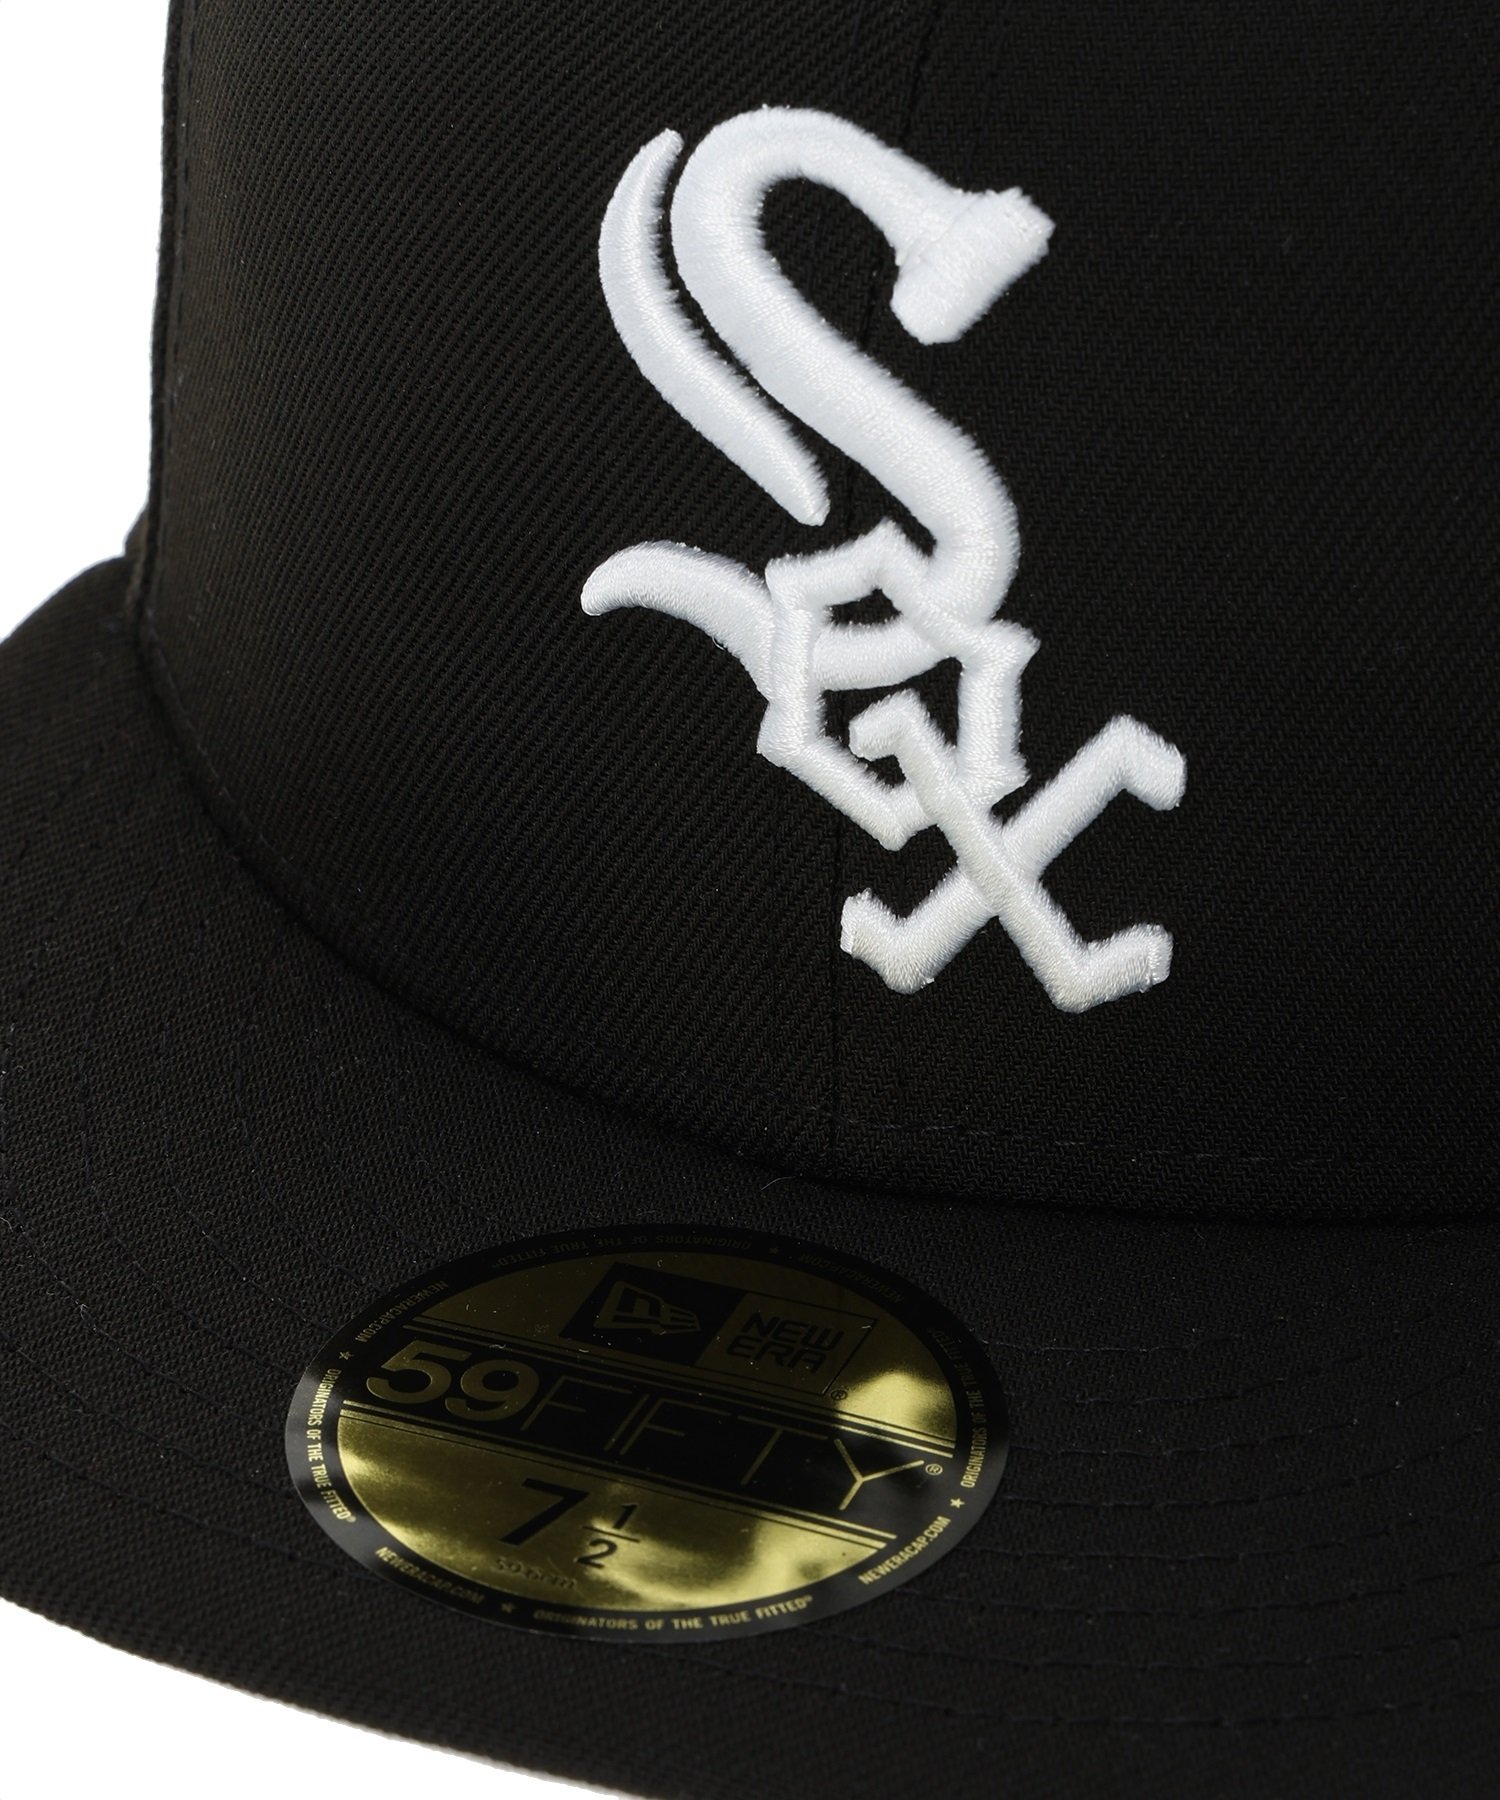 NEW ERA ニューエラ 59FIFTY MLB State Flowers シカゴ・ホワイトソックス ブラック キャップ 帽子 14109910(BLK-7)